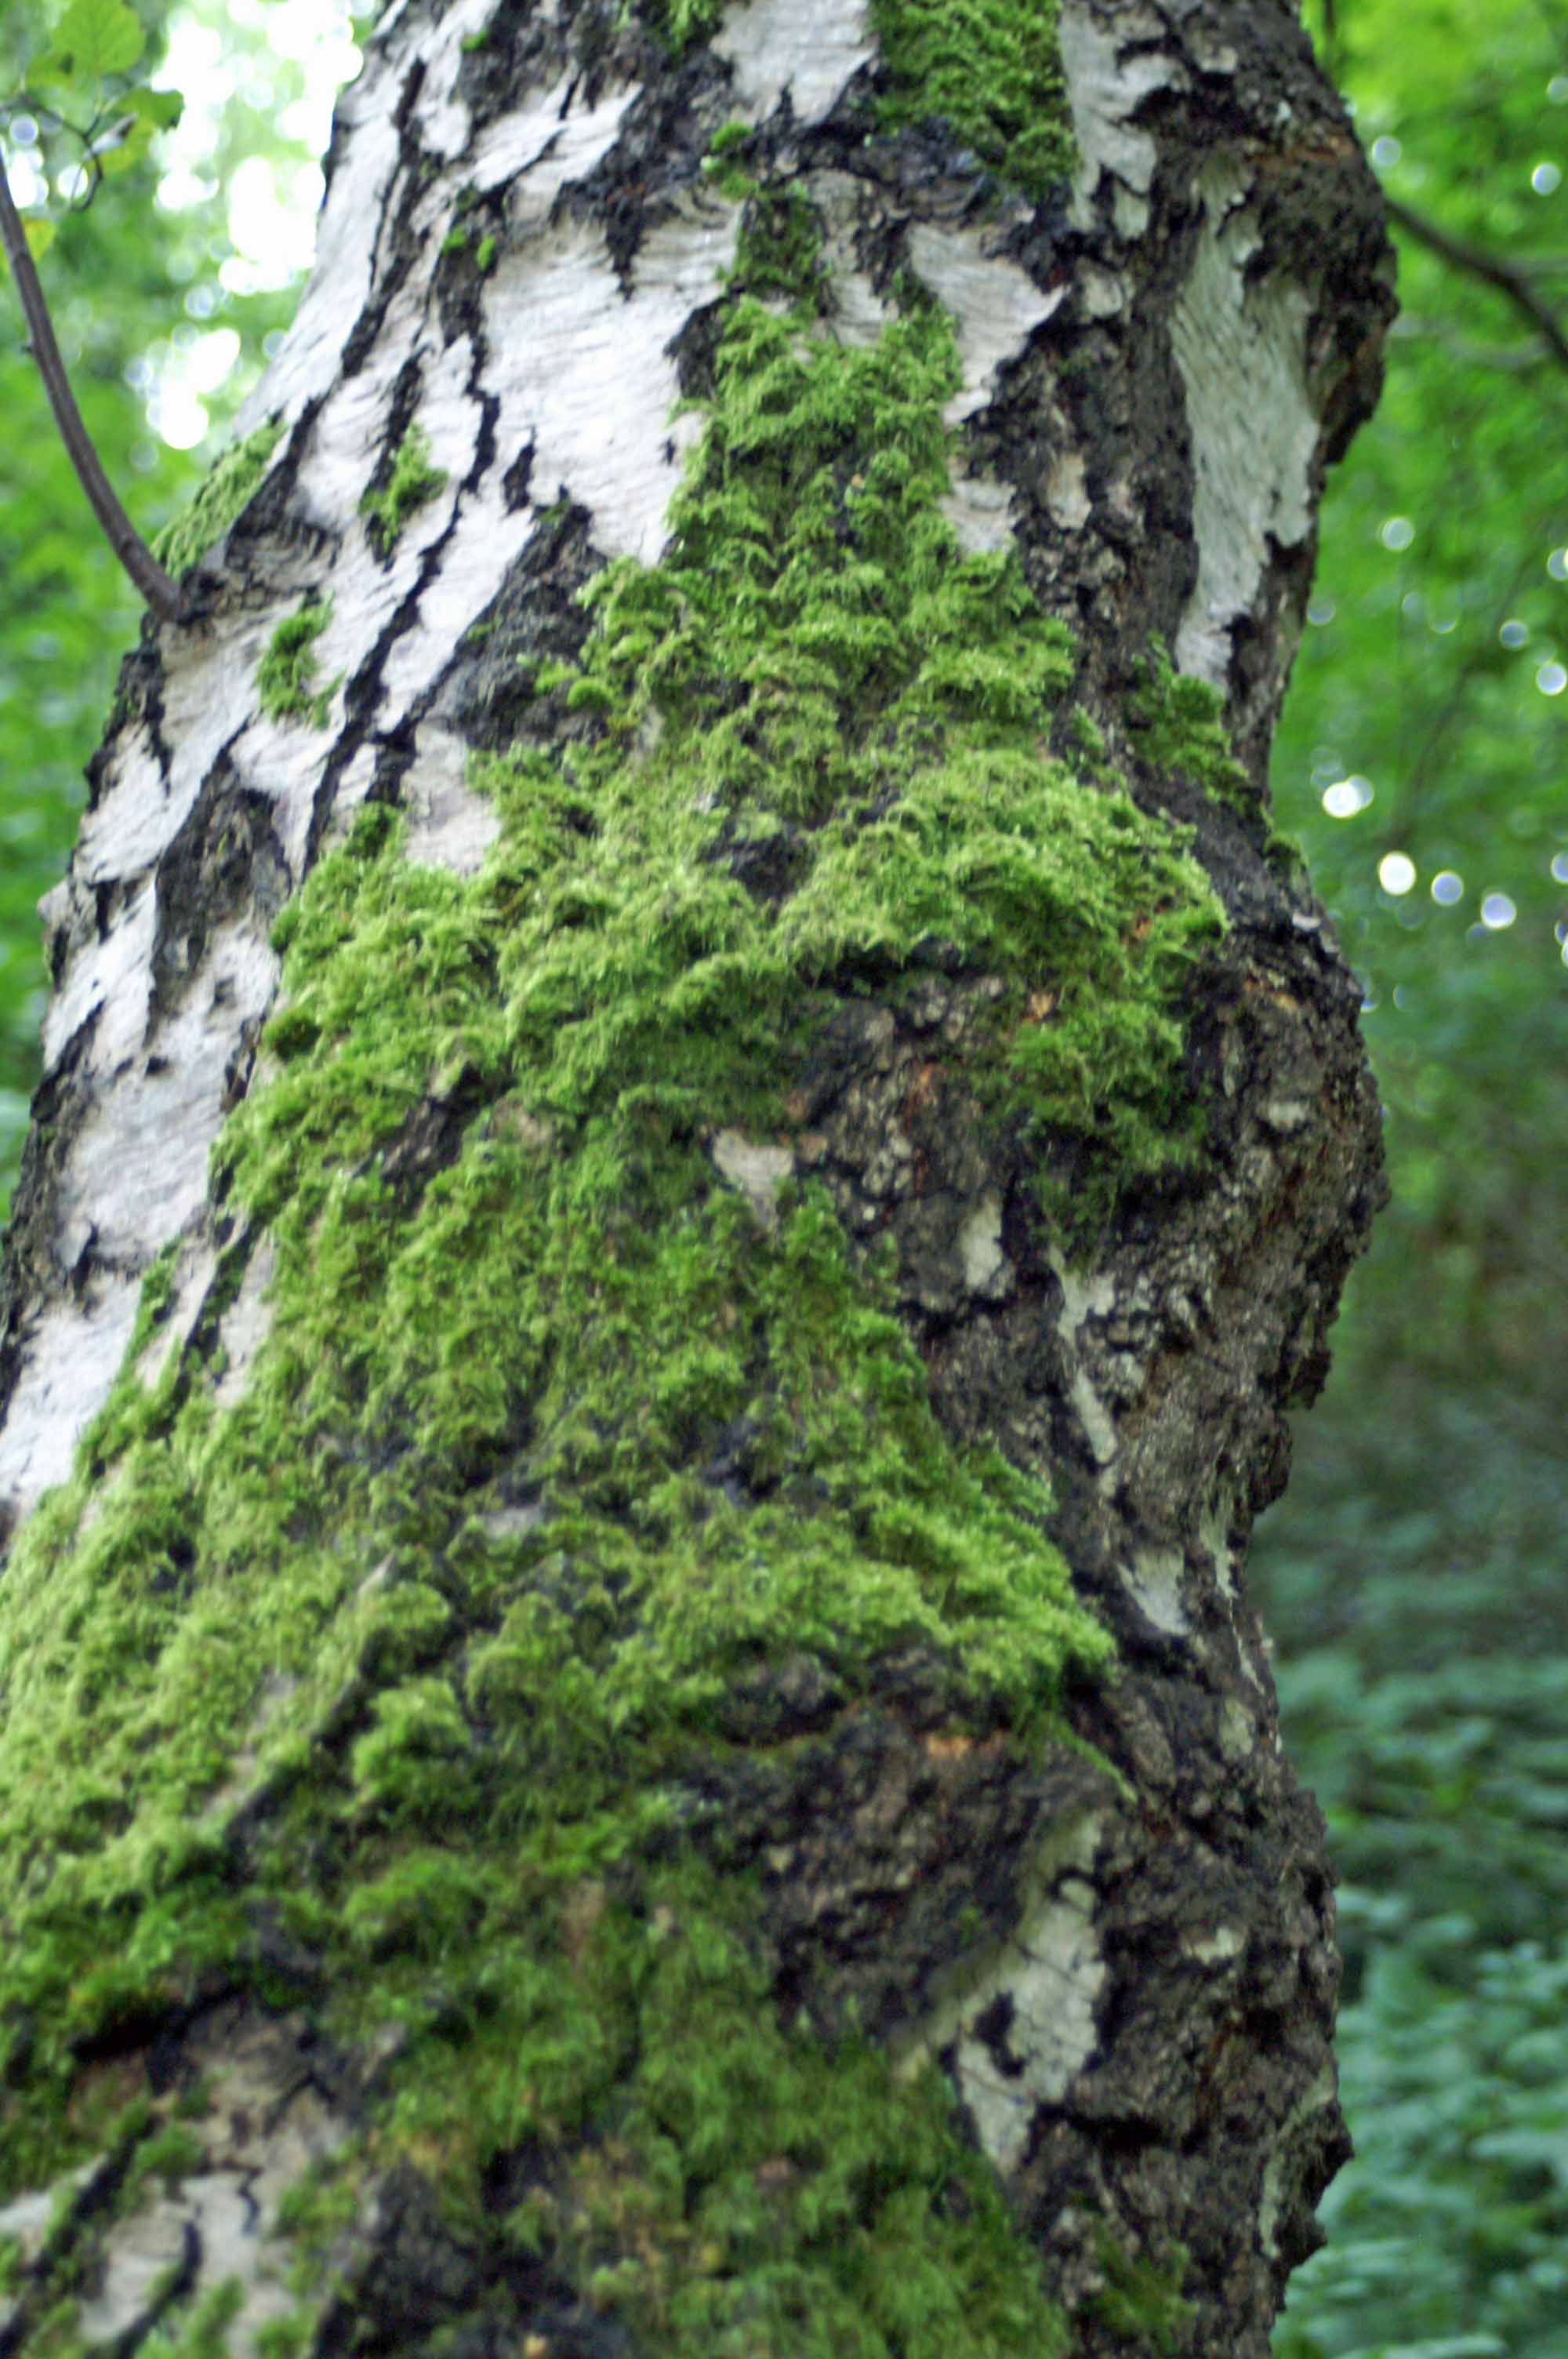 orange lichen on tree trunk | everyday nature trails